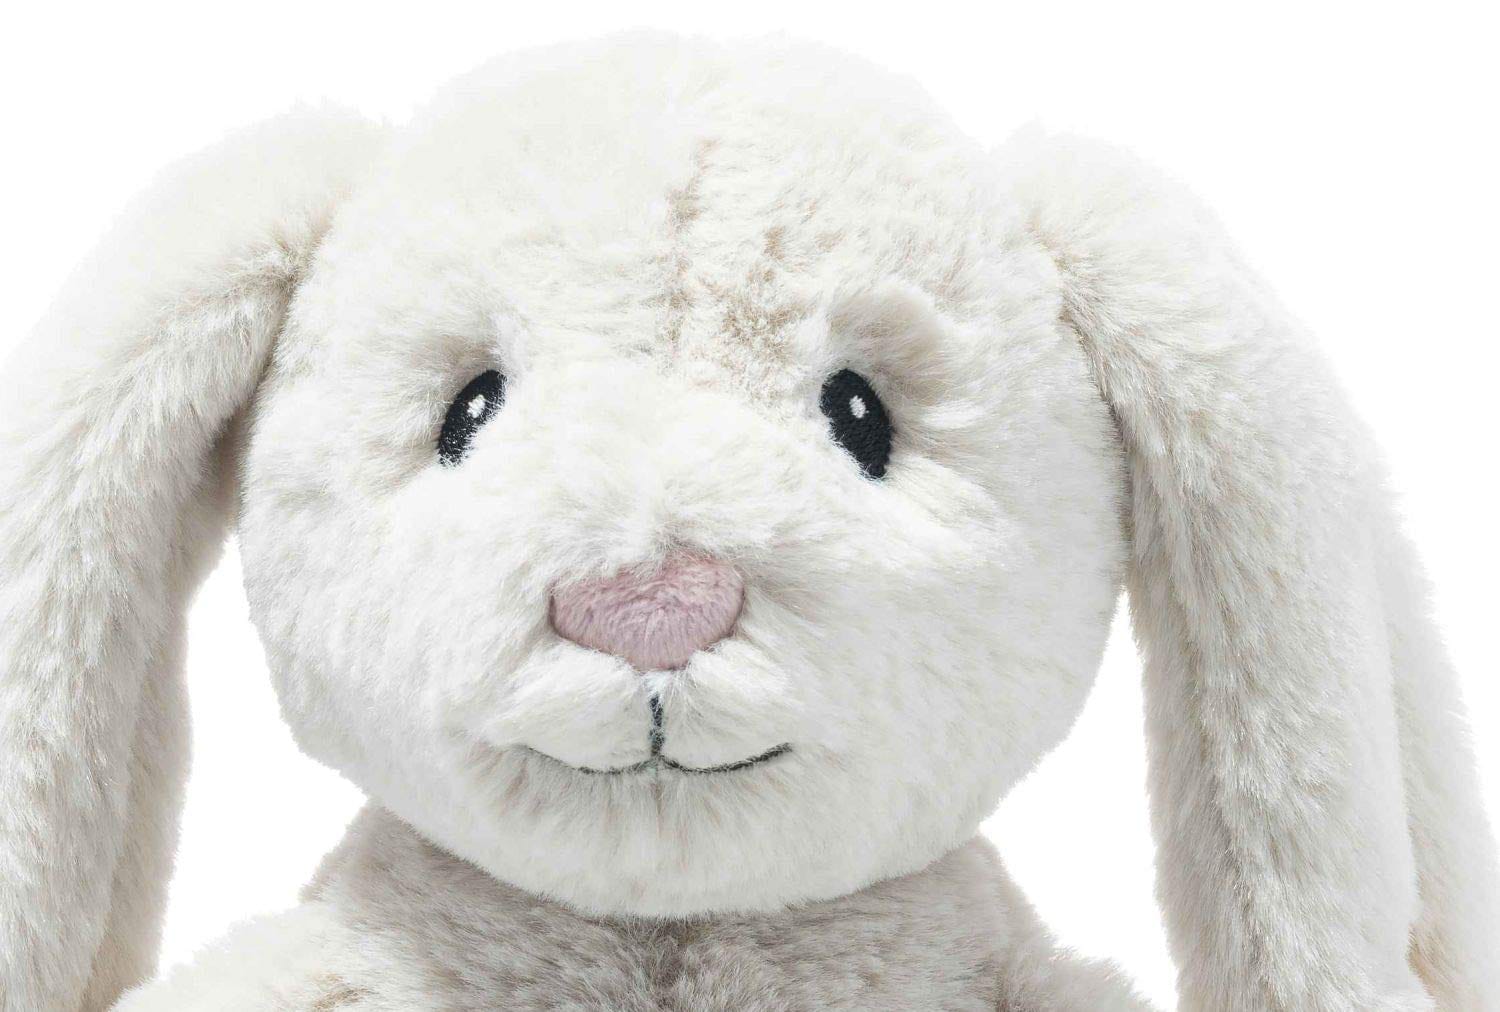 Steiff Soft Cuddly Friends My First Steiff Hoppie Rabbit - Zippigames